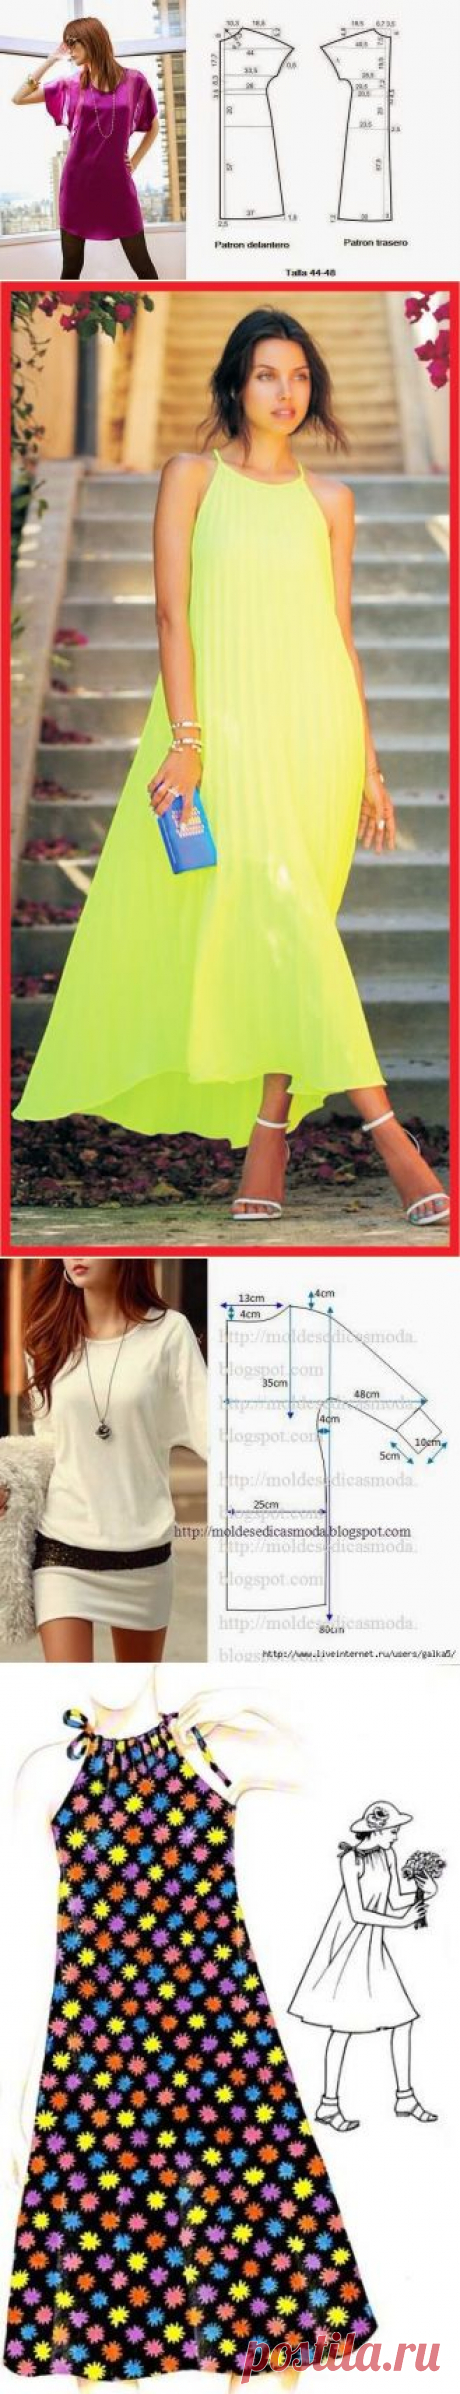 Простые модели для летнего платья с выкройками — Рукоделие